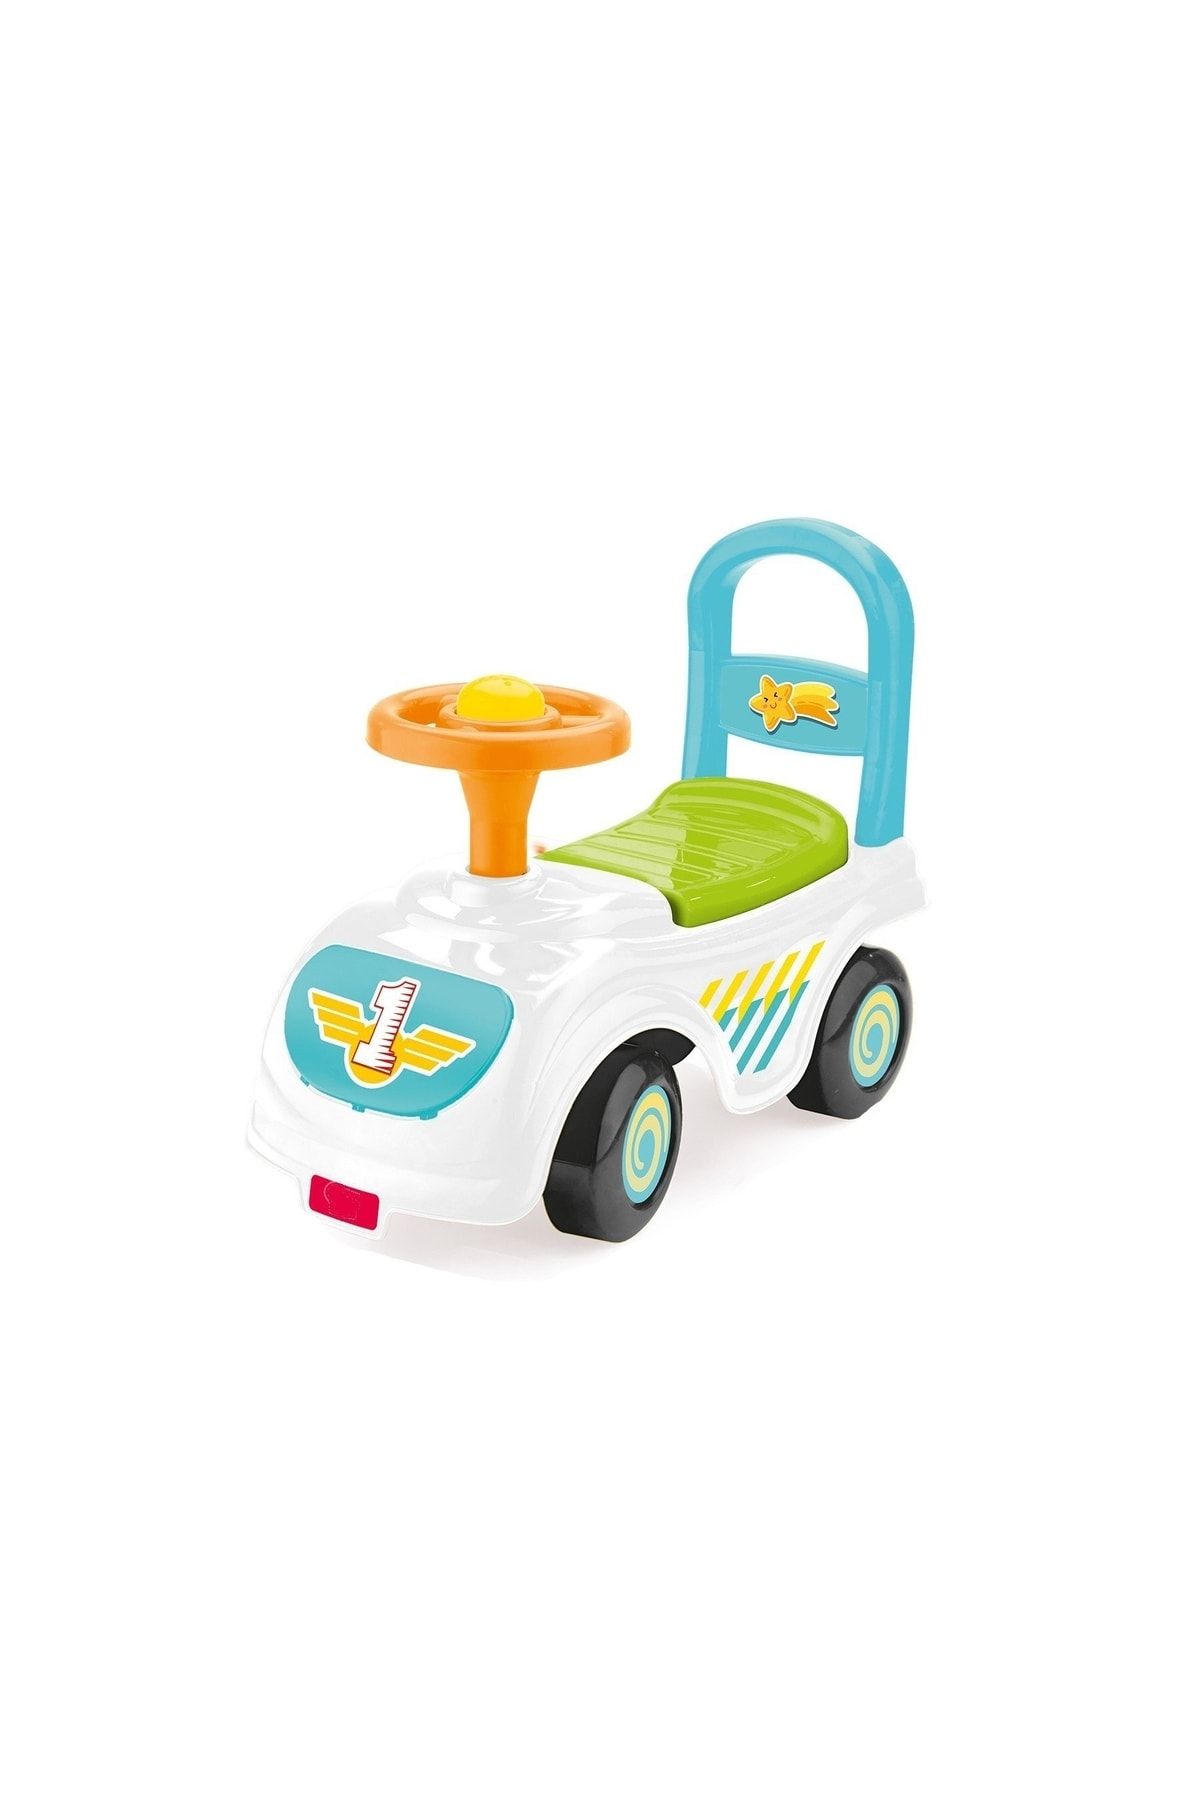 EVGARAJ Ilk Adım Arabam Yürüteç Mini Araba Kız Erkek Bebek Oyuncak Araba